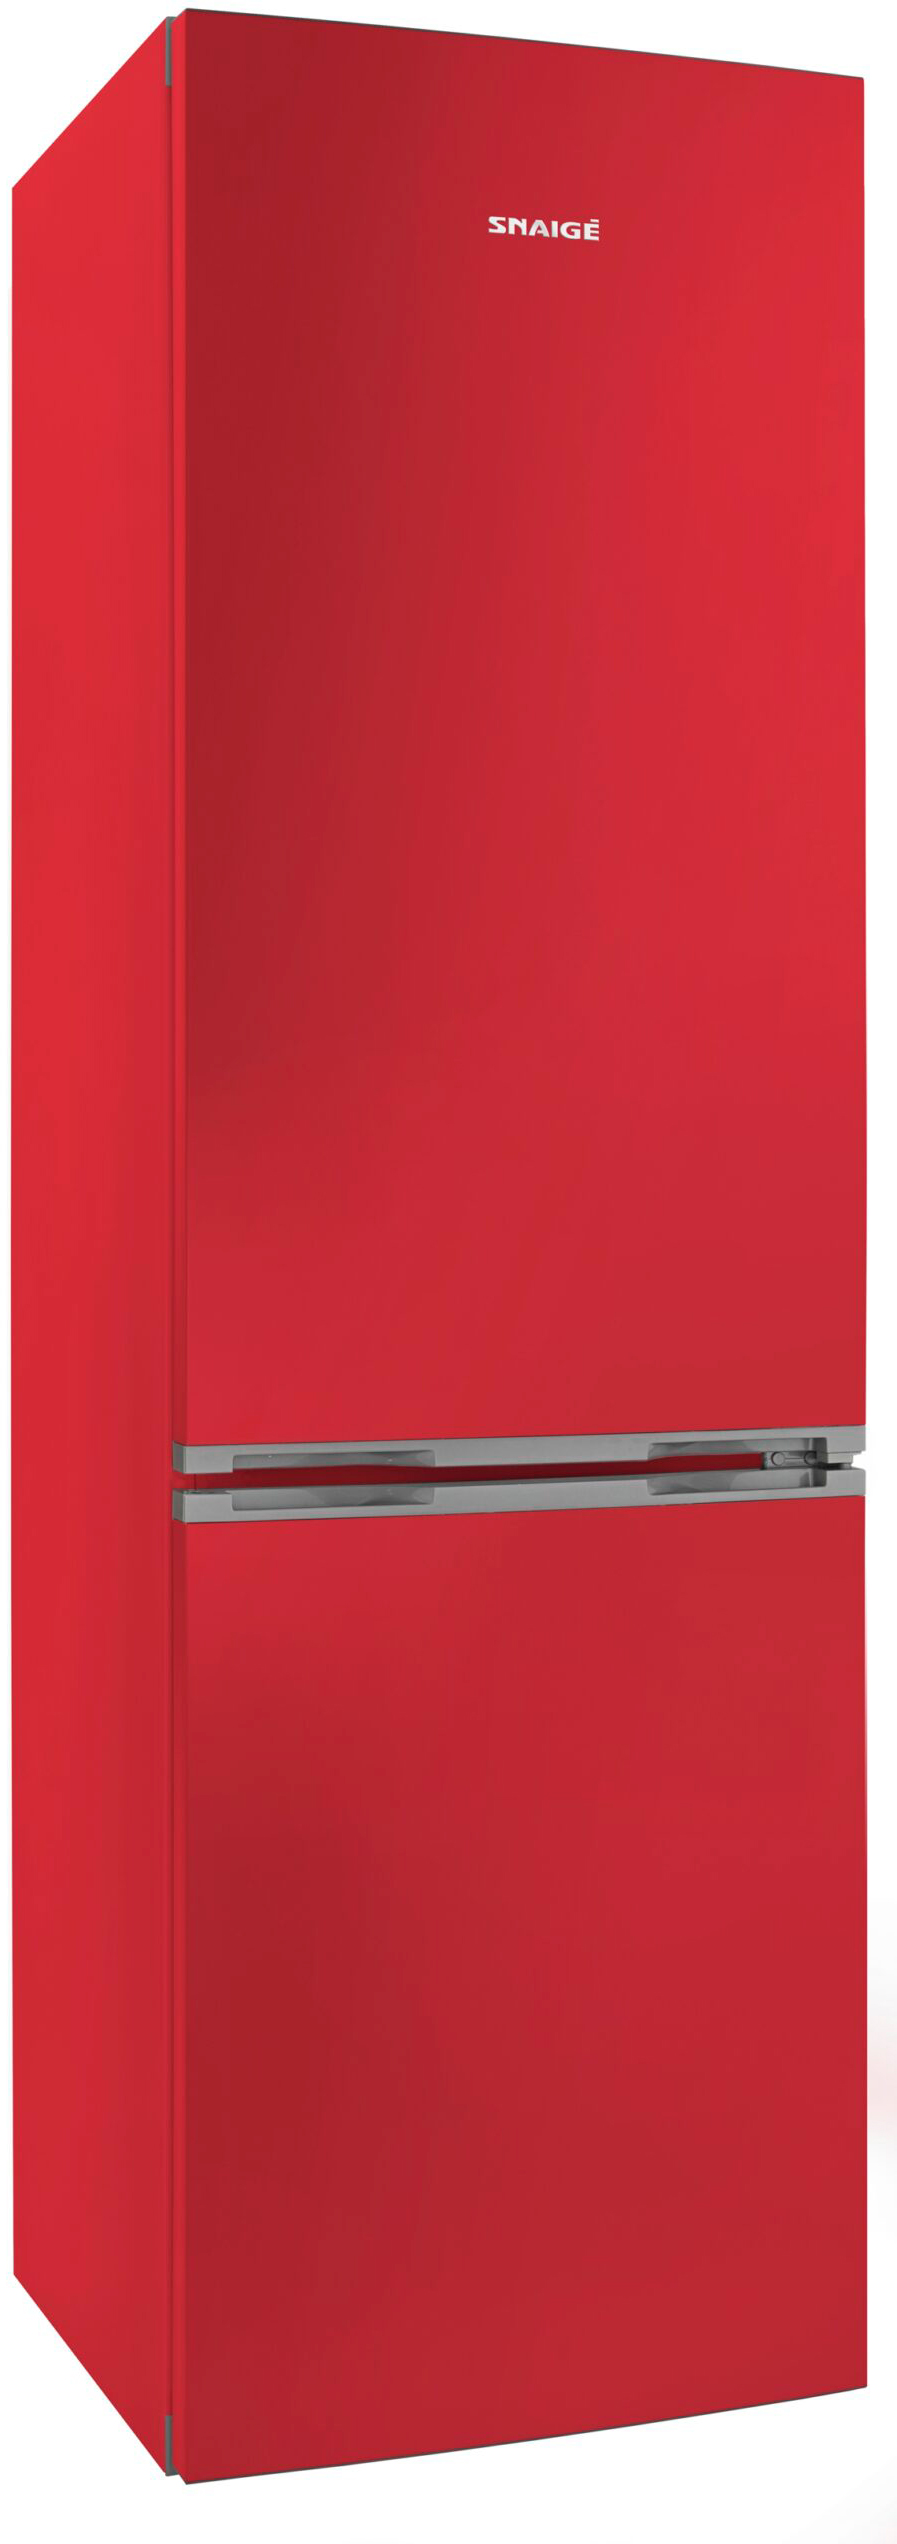 Холодильник Snaige RF58SM-S5RB2E в интернет-магазине, главное фото